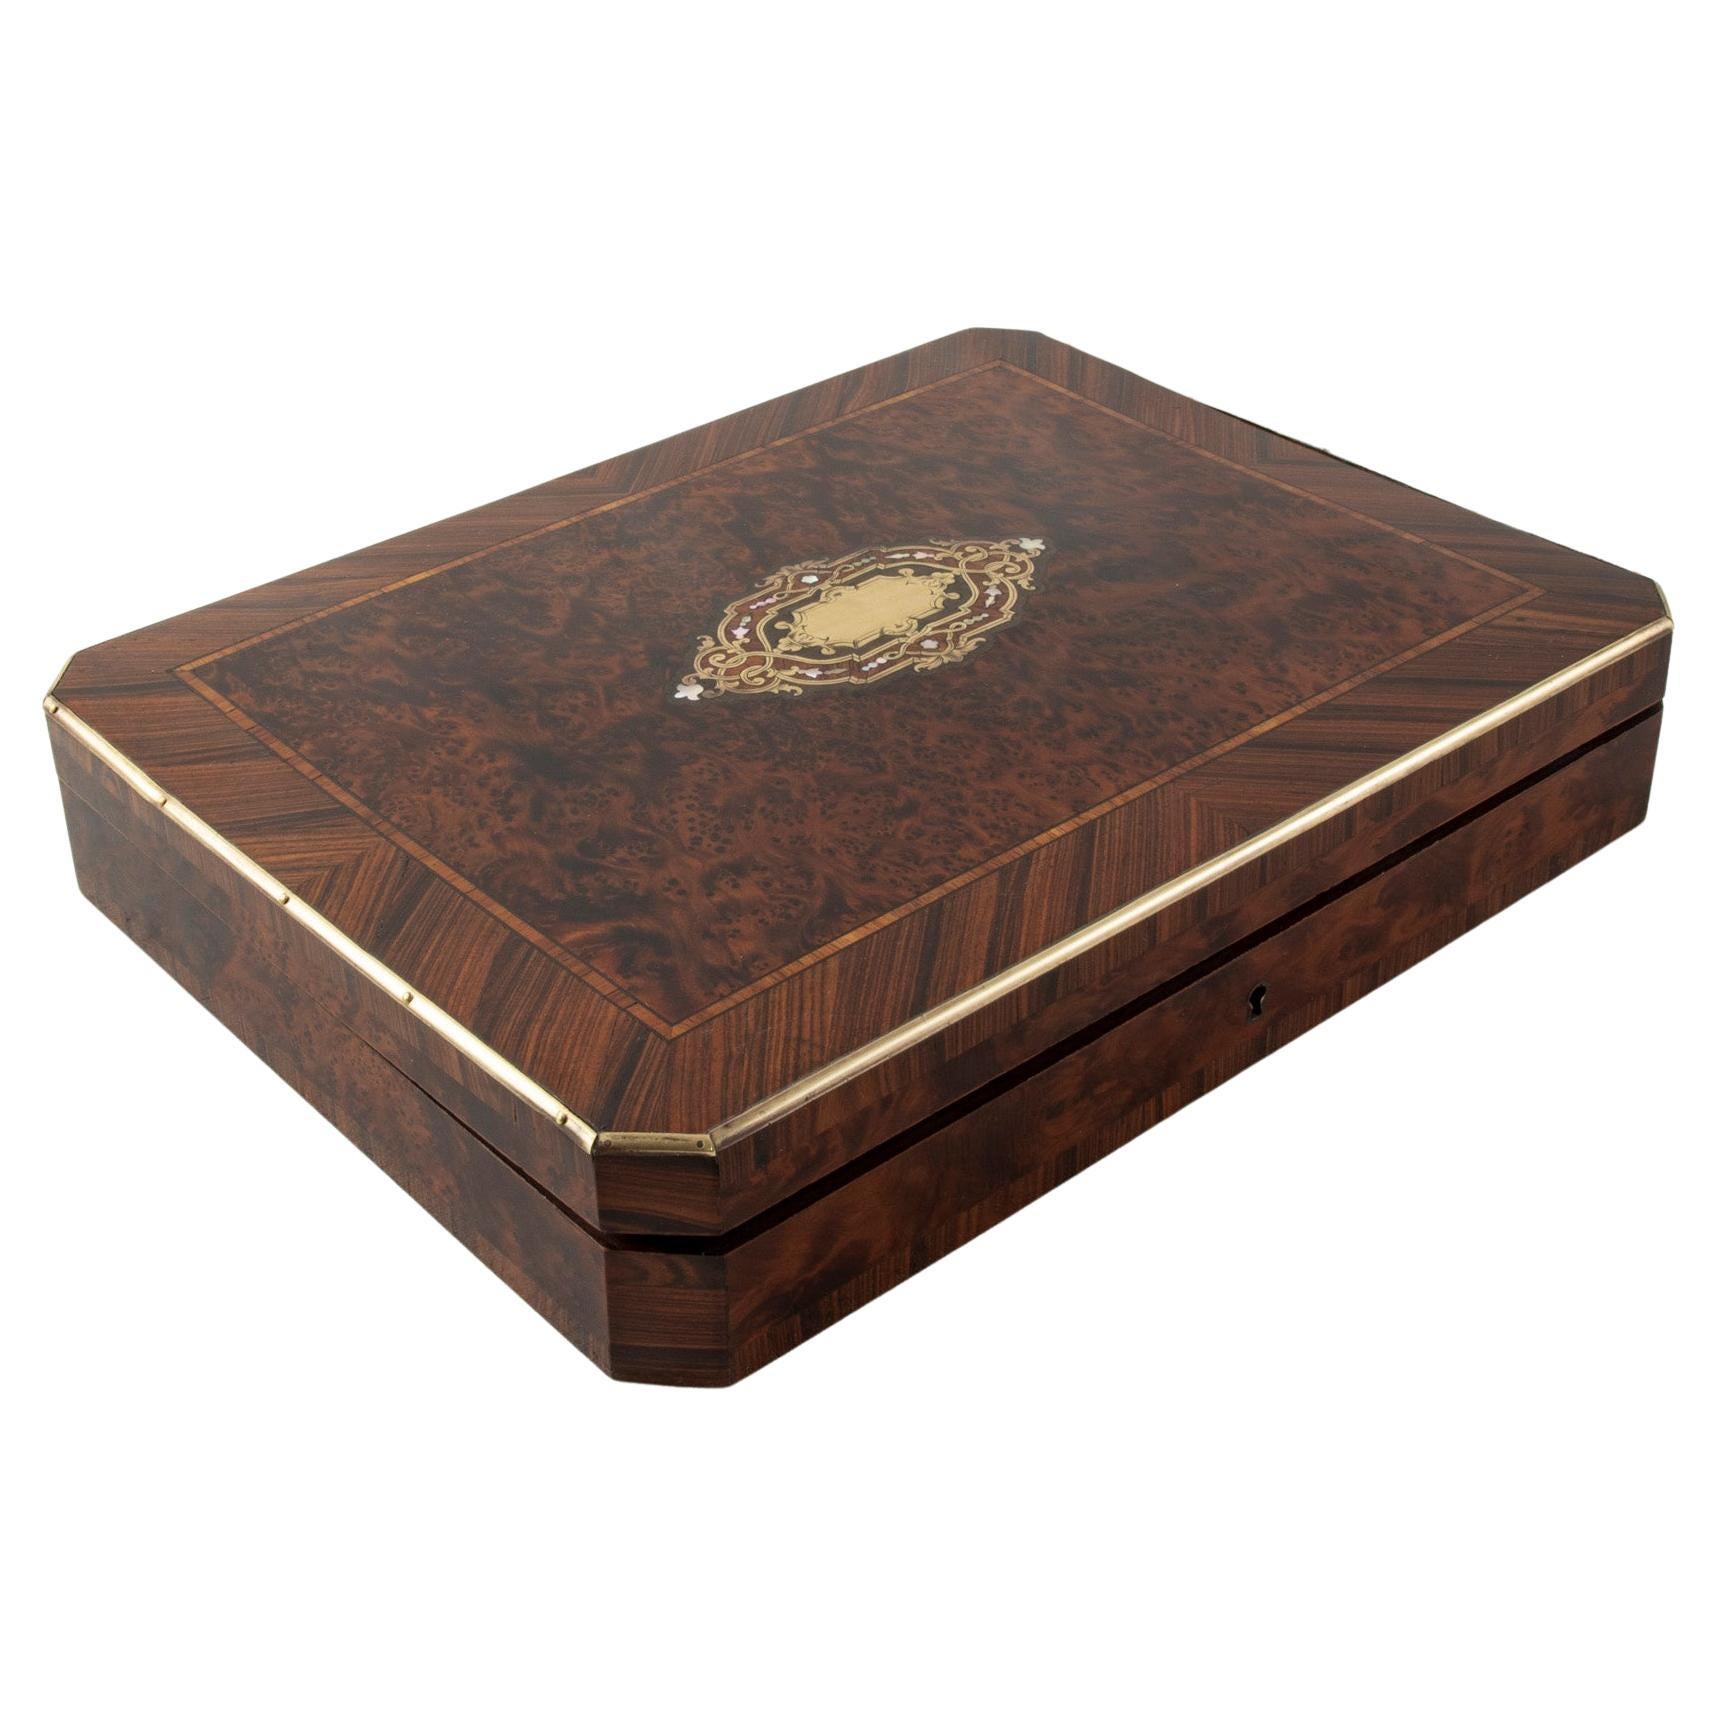 Caja de juego de marquetería francesa de finales del siglo XIX, época de Napoleón III, madreperla